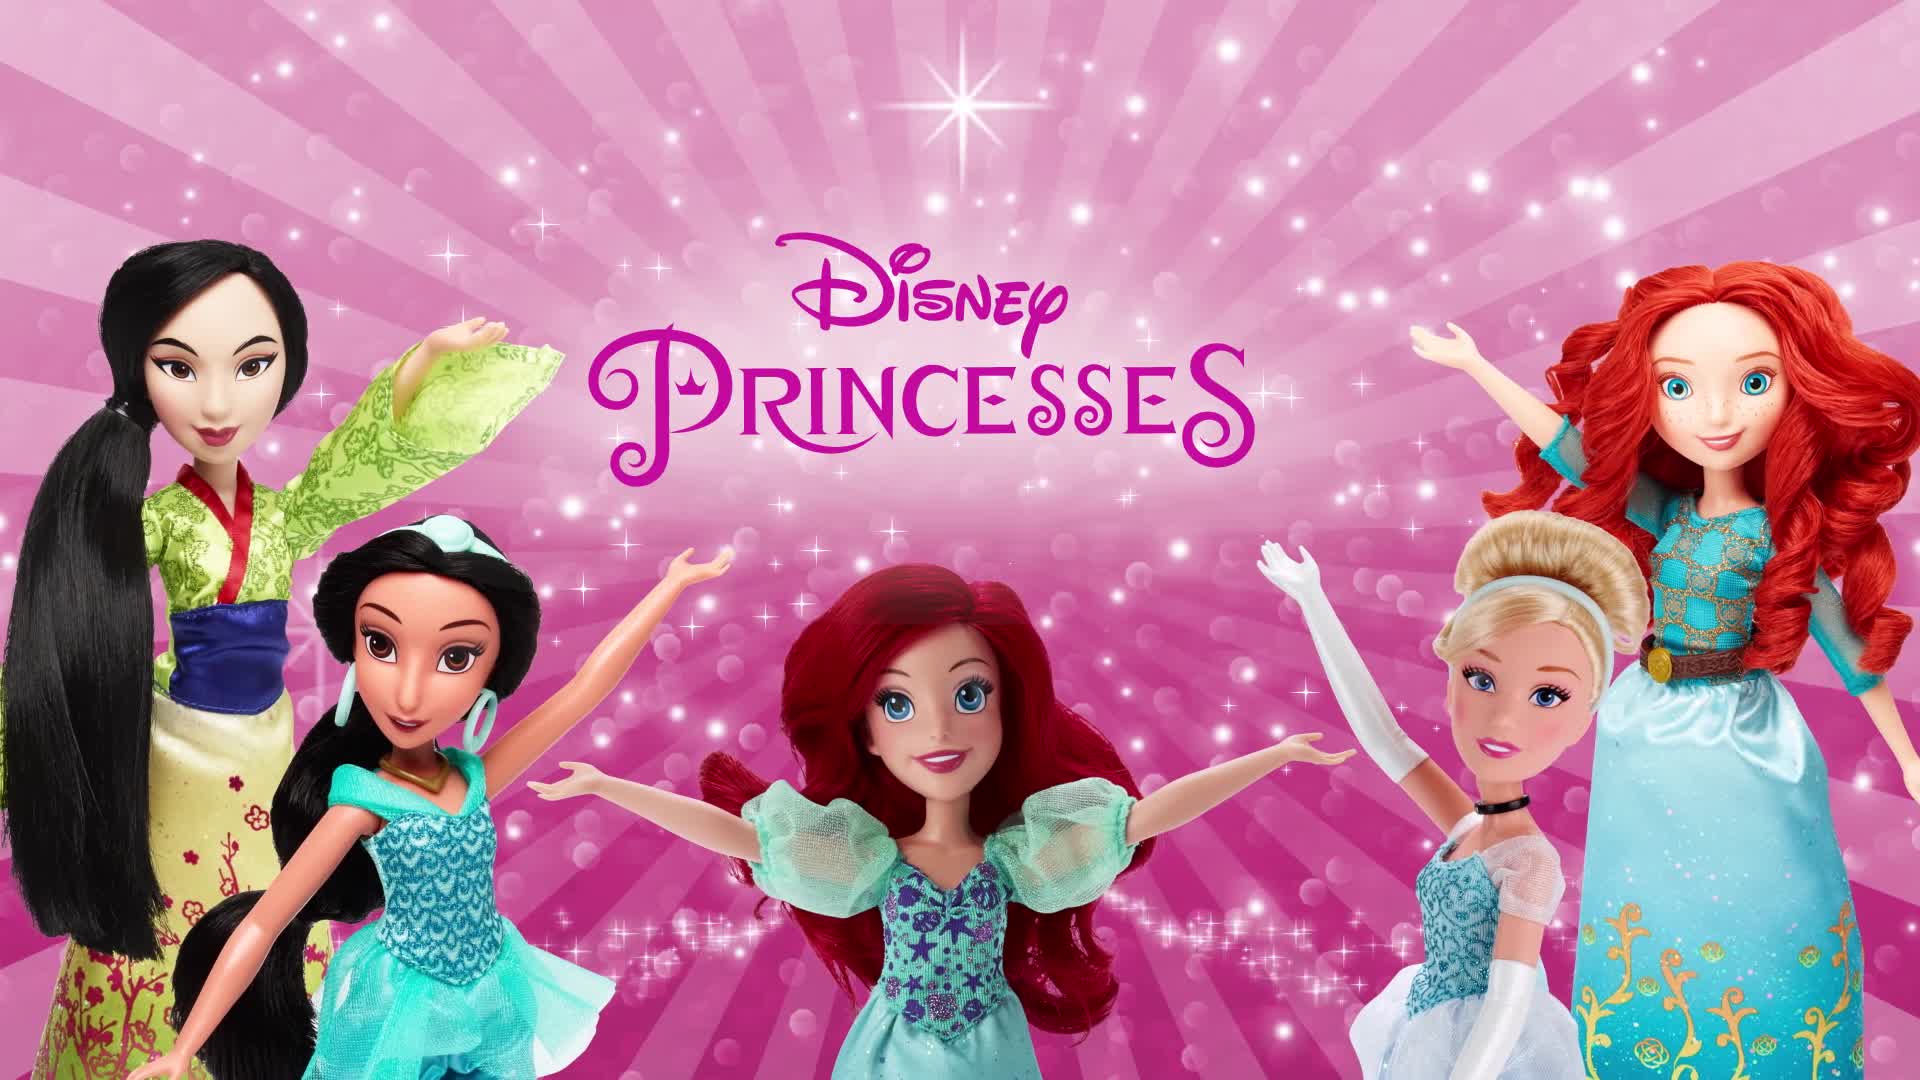 Disney Princesses – Poupee Princesse Disney Poussière d'Etoiles Aurore -  les Prix d'Occasion ou Neuf